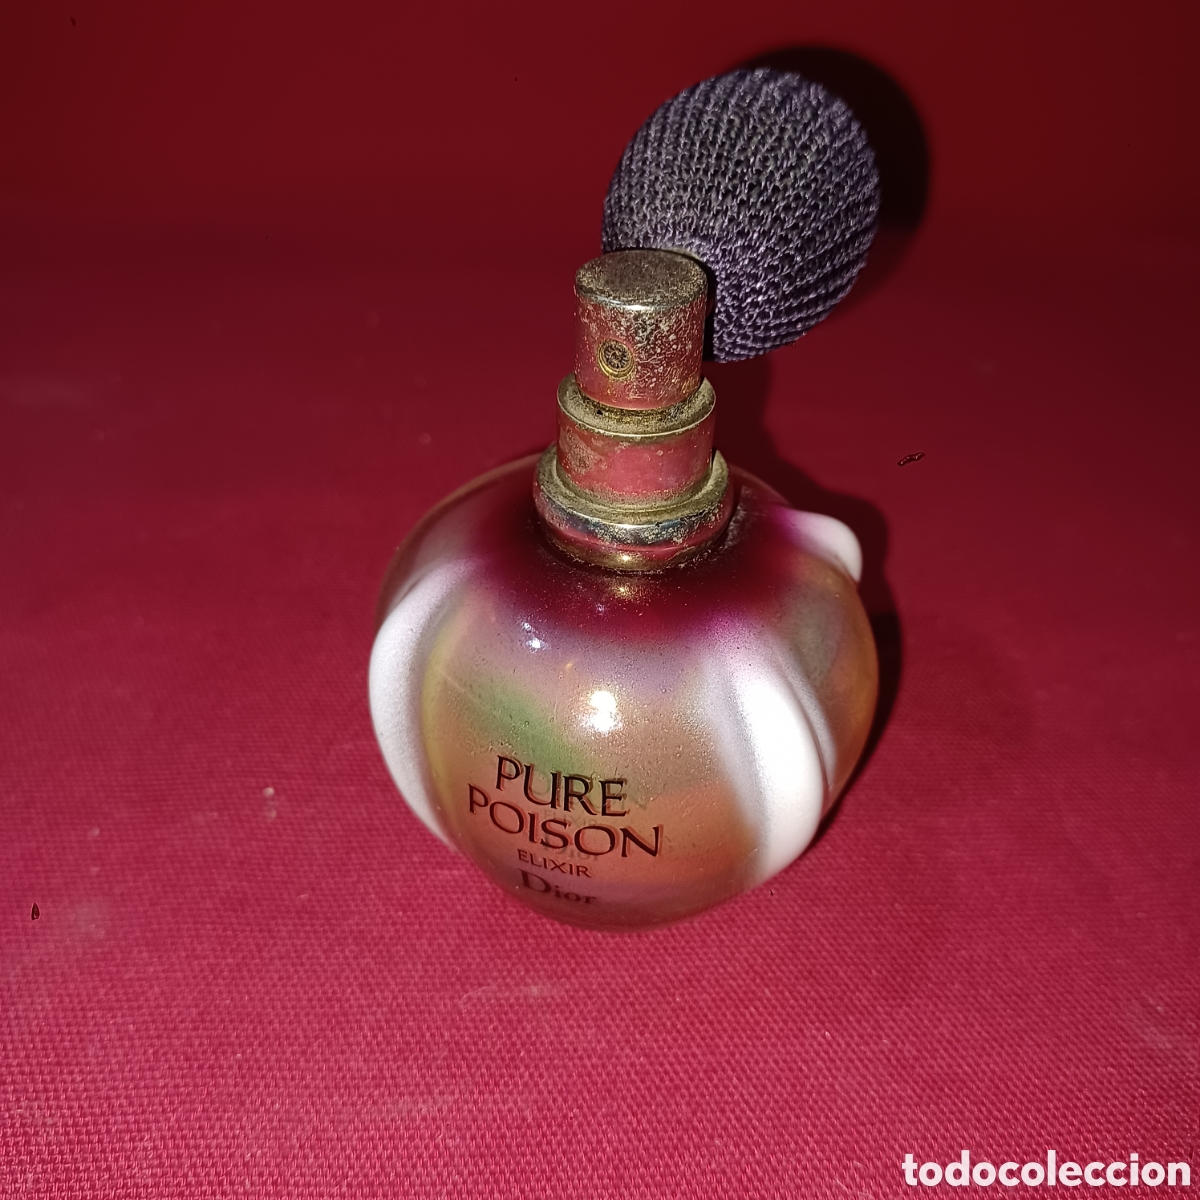 Pure Poison Elixir by Christian Dior for Women - Eau de Parfum, 50